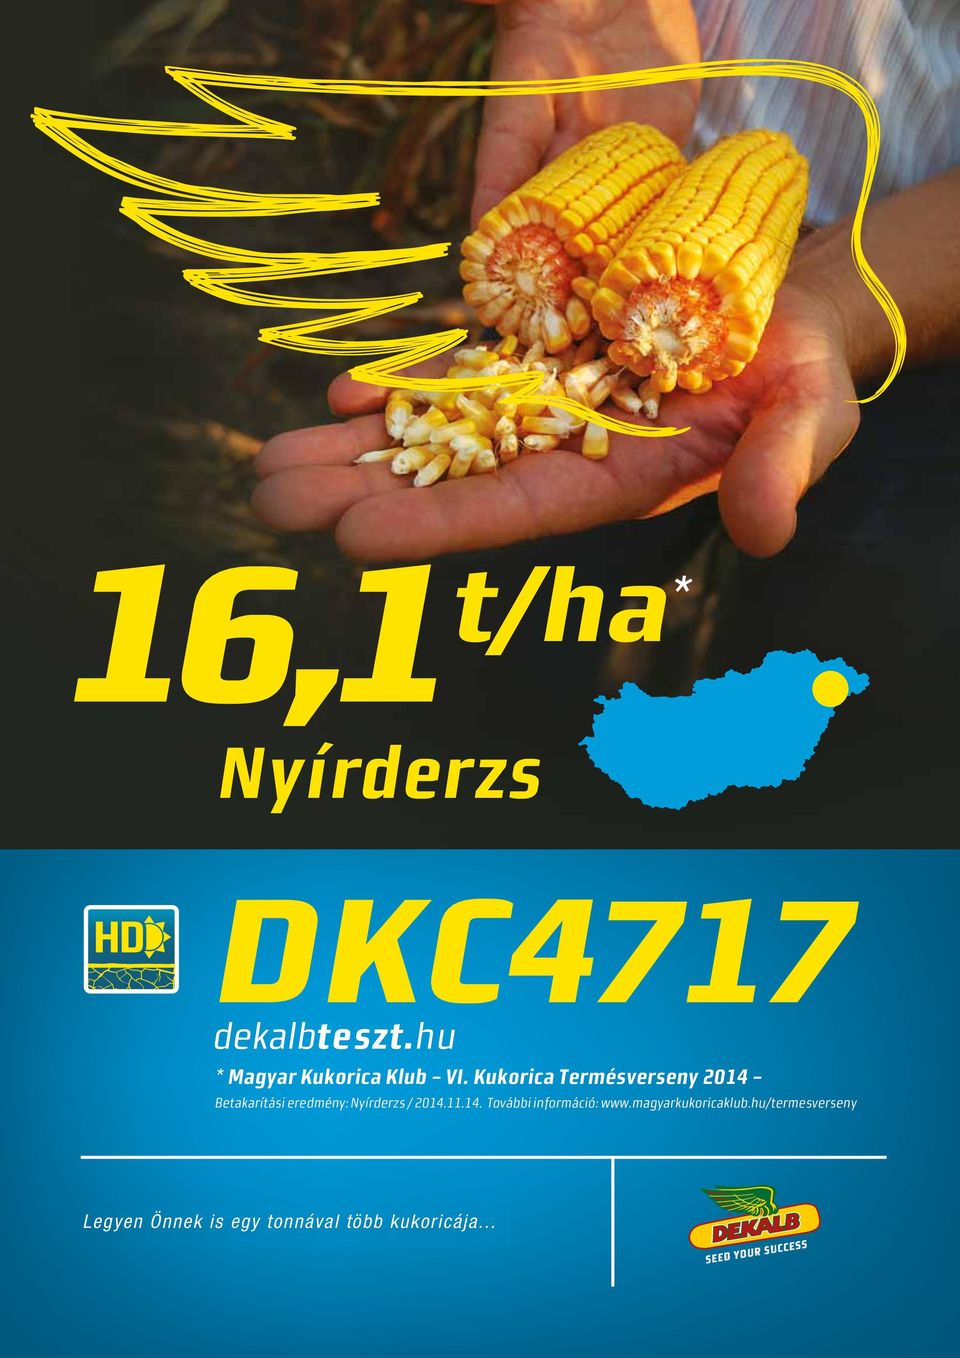 / 2014.11.14. További információ: www.magyarkukoricaklub.